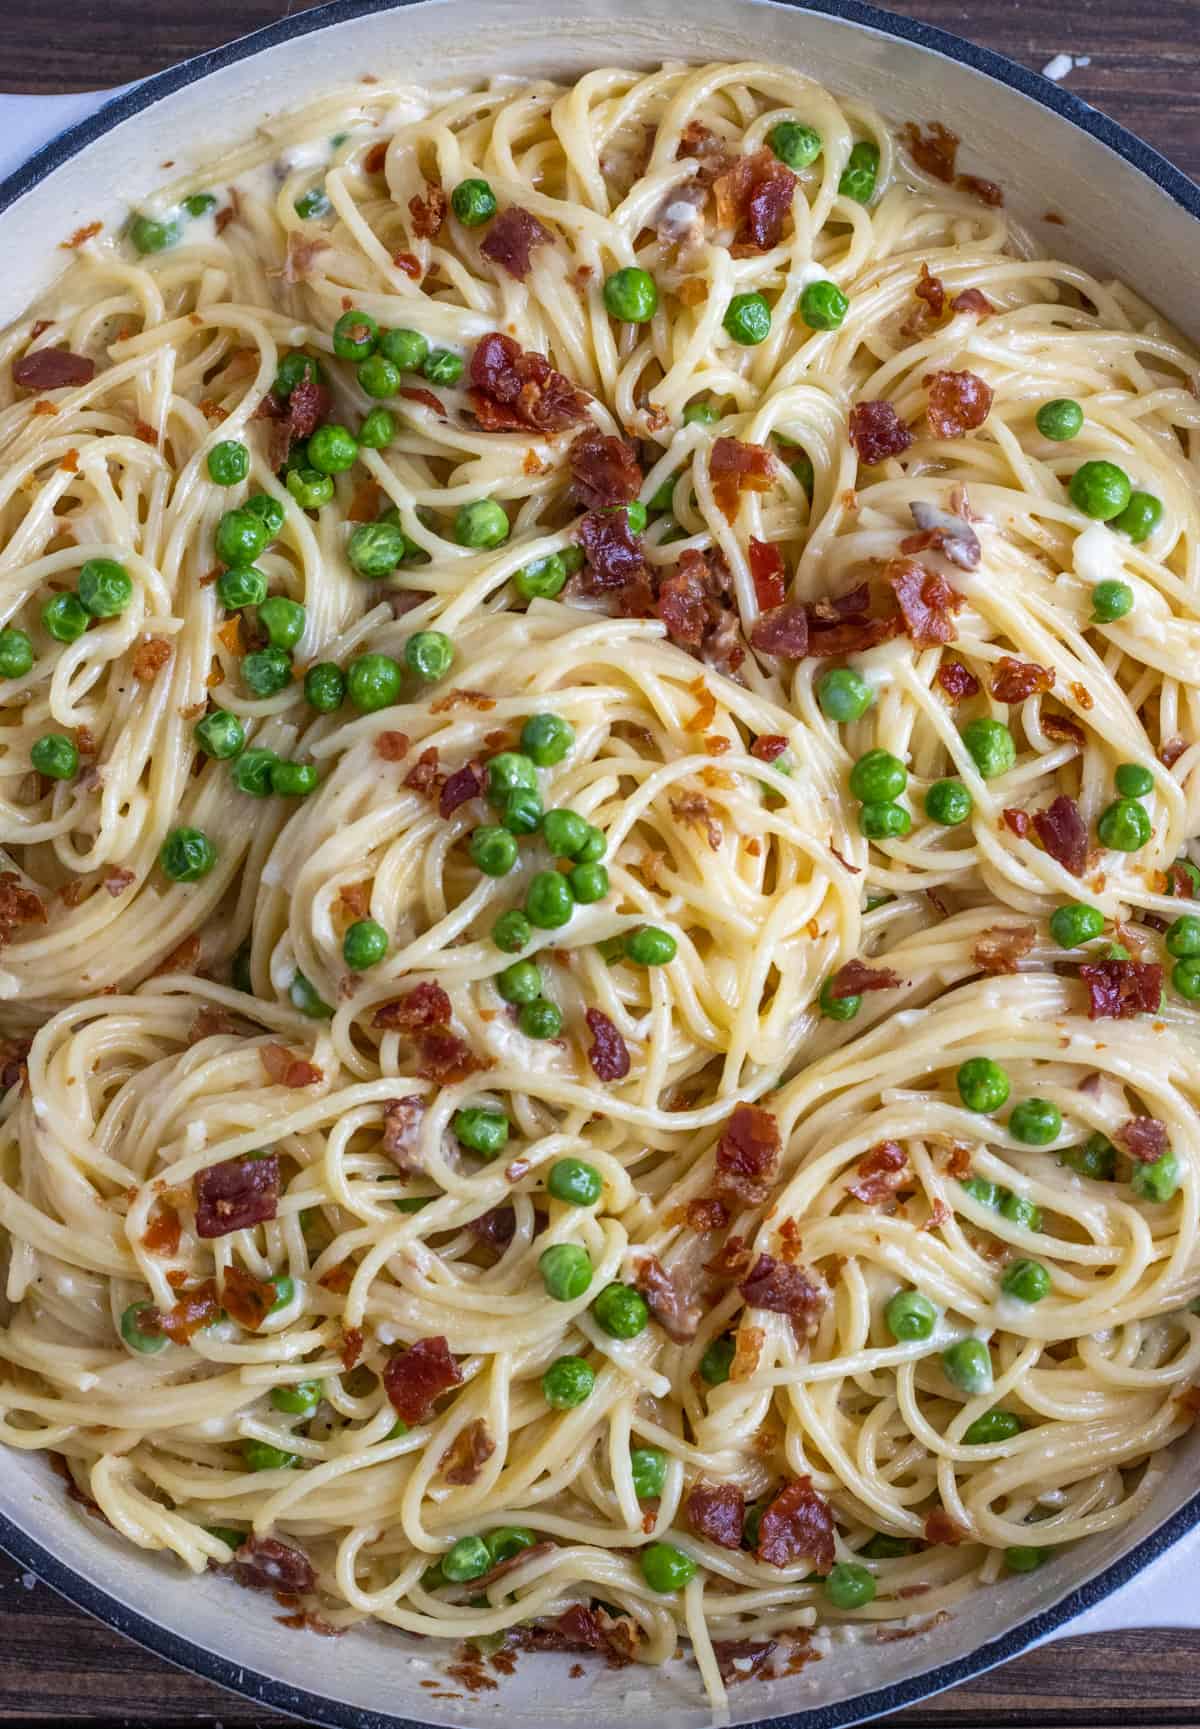 Spaghetti noodles in Alfredo sauce with peas and crispy prosciutto in a white casserole dish.